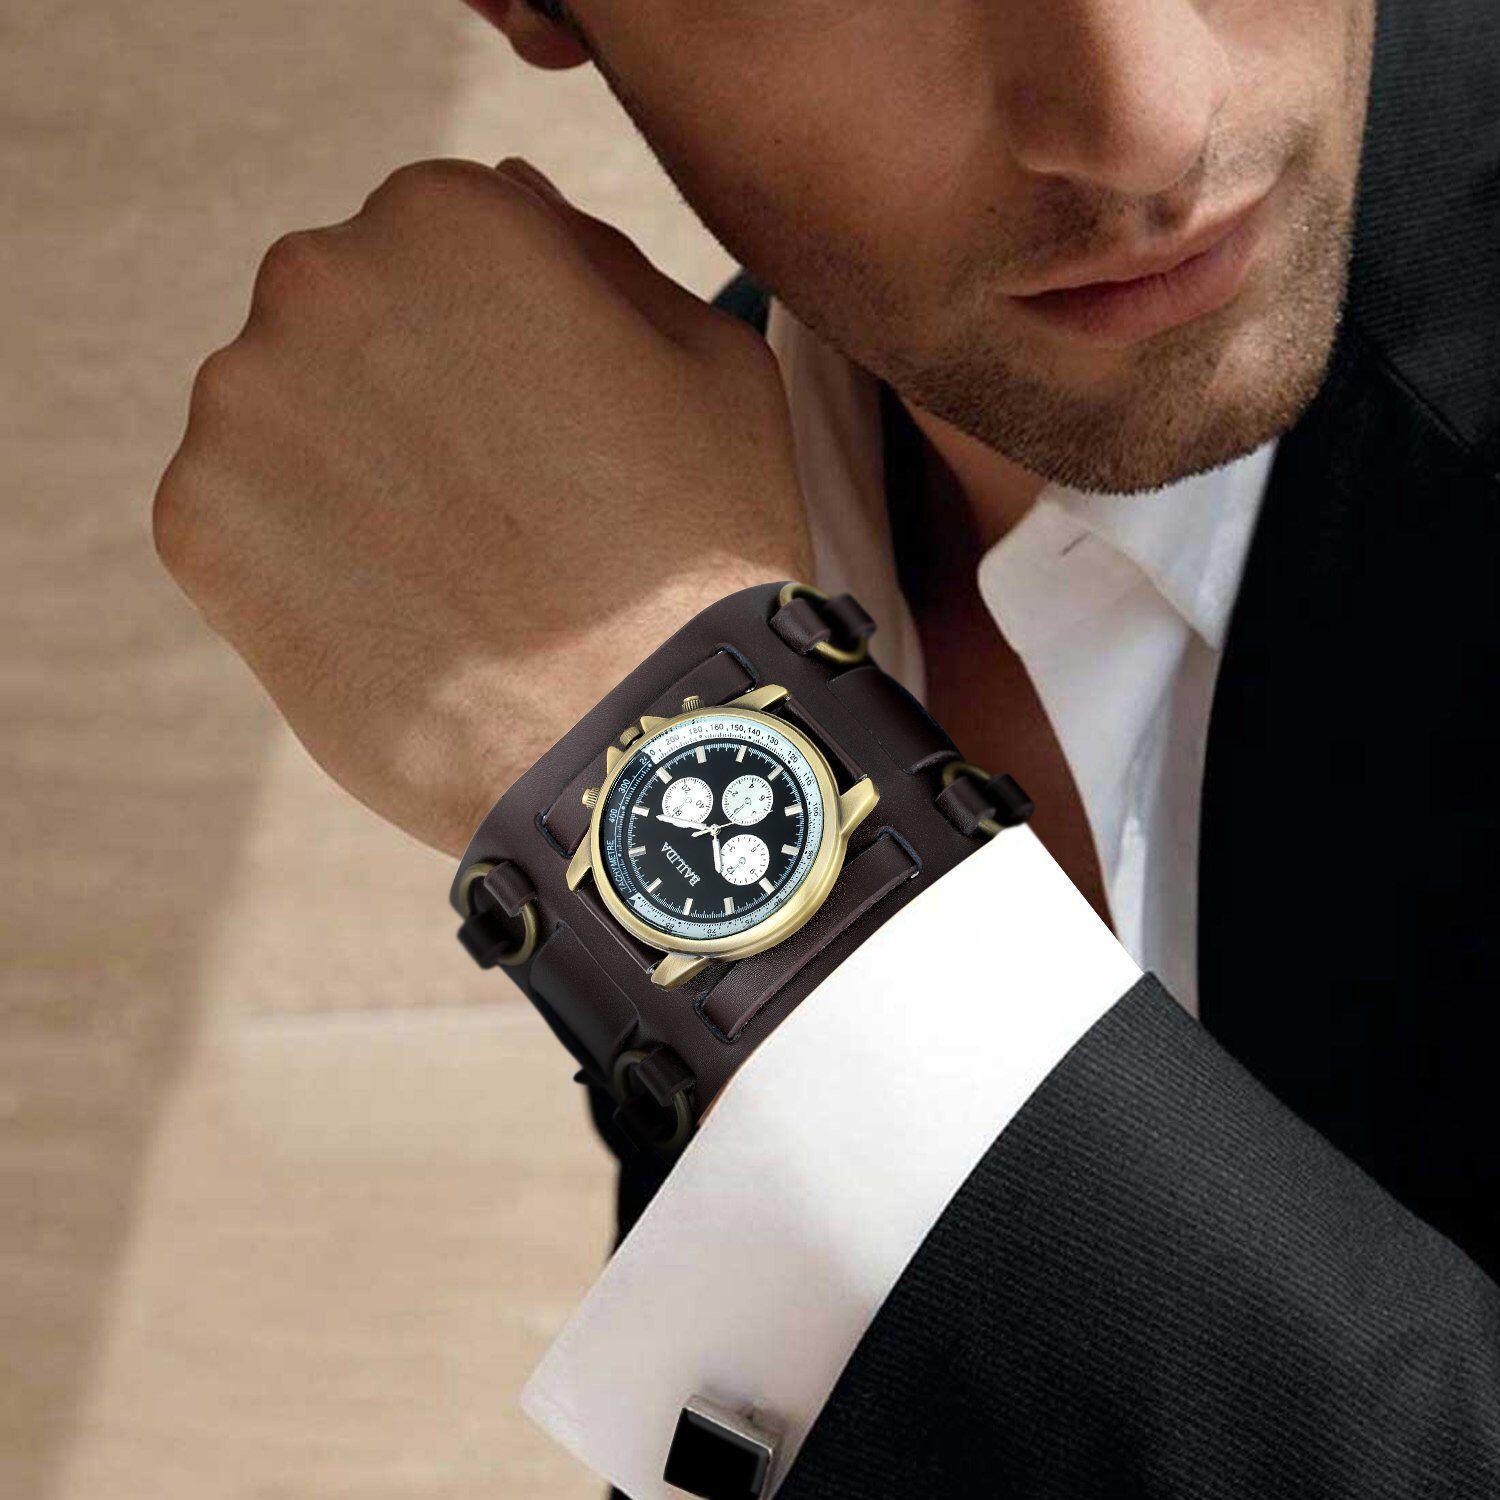 Как правильно надевать часы. Часы мужские. Красивые мужские часы. Часы на руке. Мужские часы на руке.